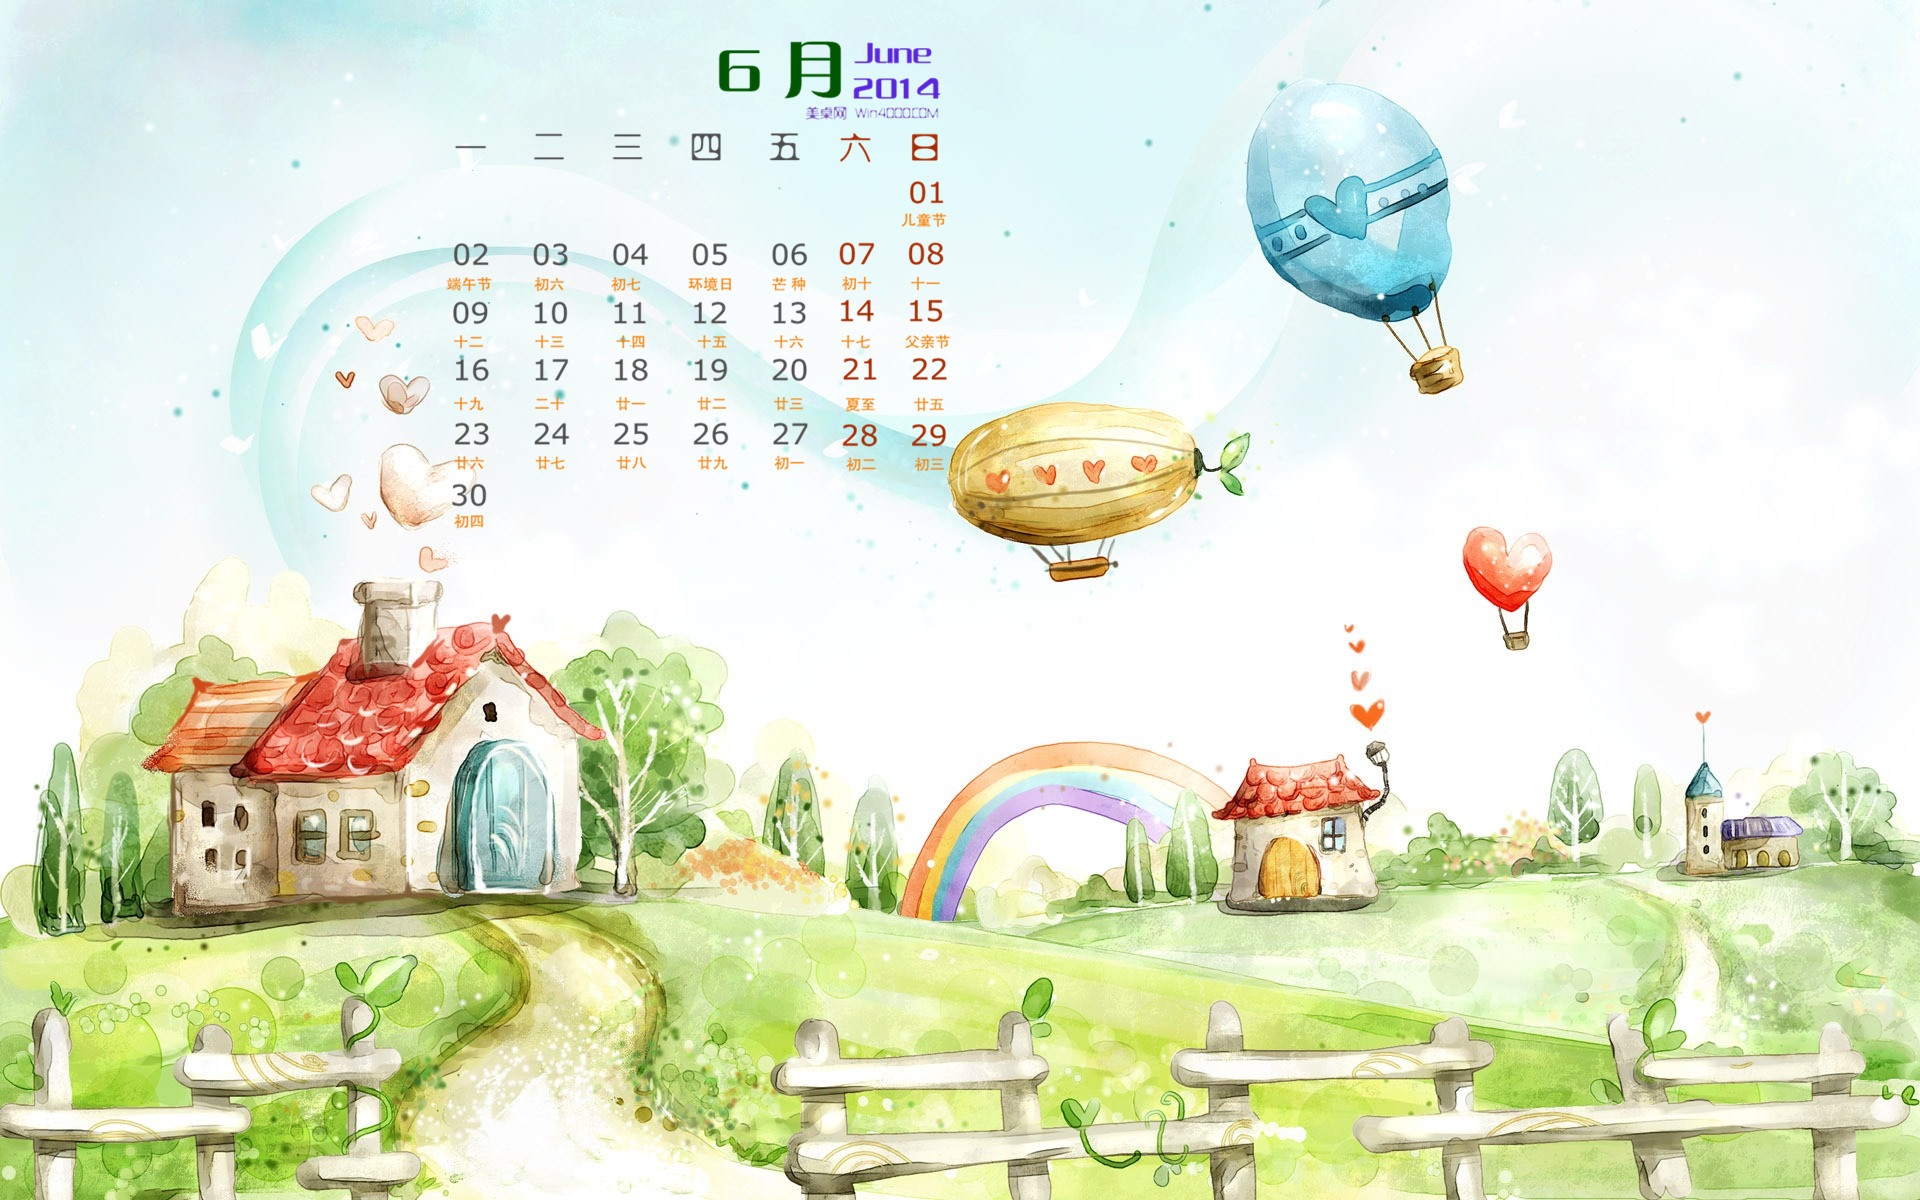 June 2014 calendar wallpaper (1) #10 - 1920x1200